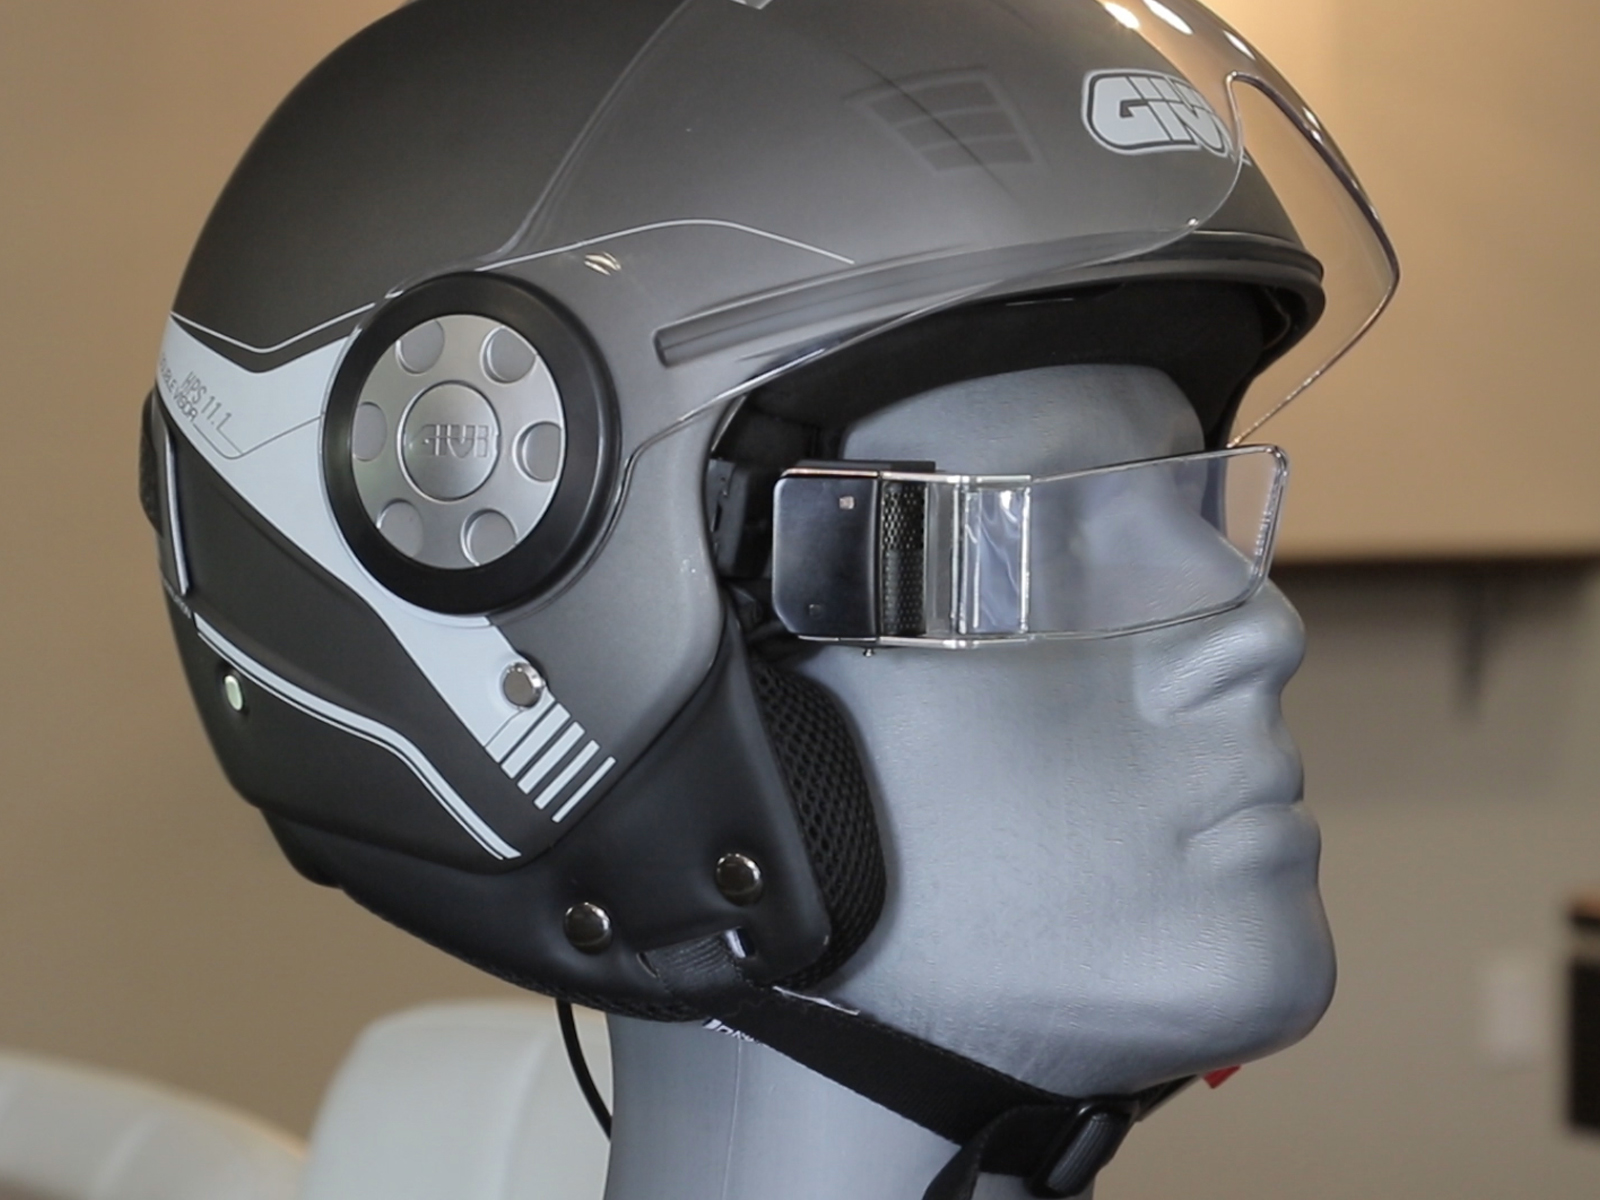 Shocking Gallery Of heads up display motorcycle helmet Photos